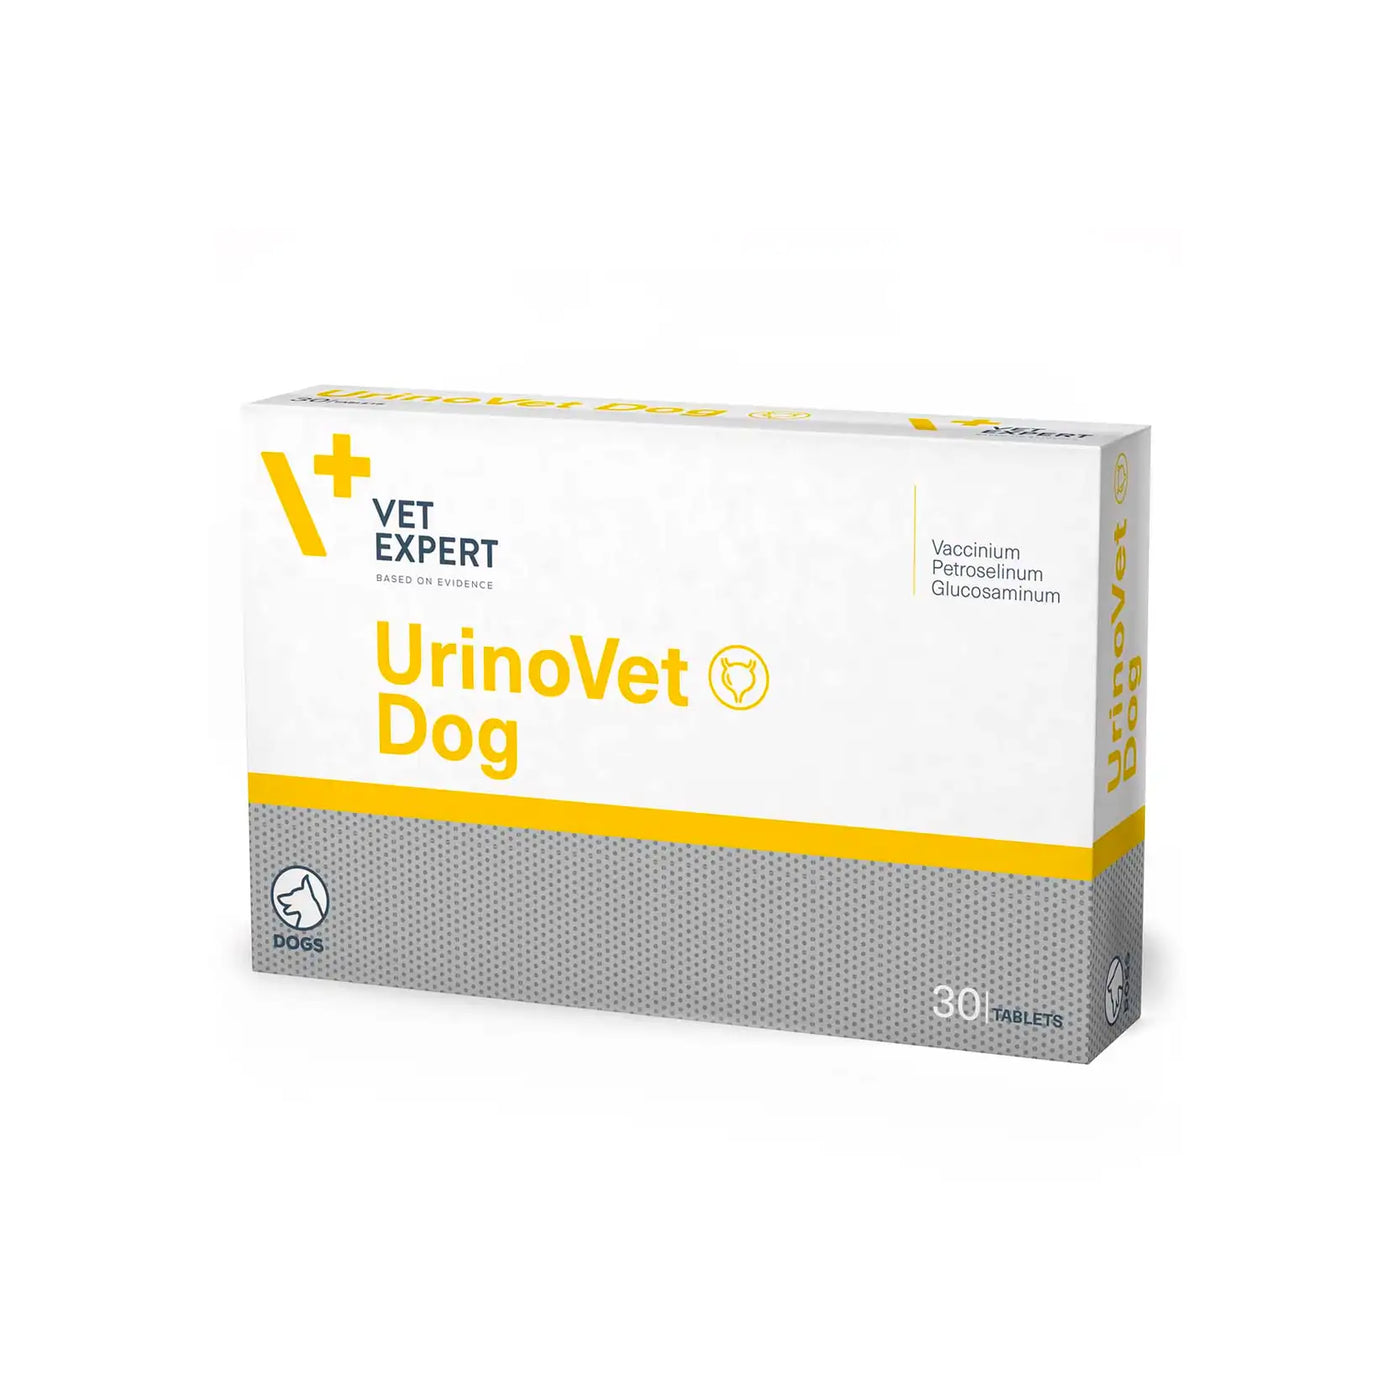 Vet Expert UrinoVet (Urinary Supplement for Dogs) 30 tablets